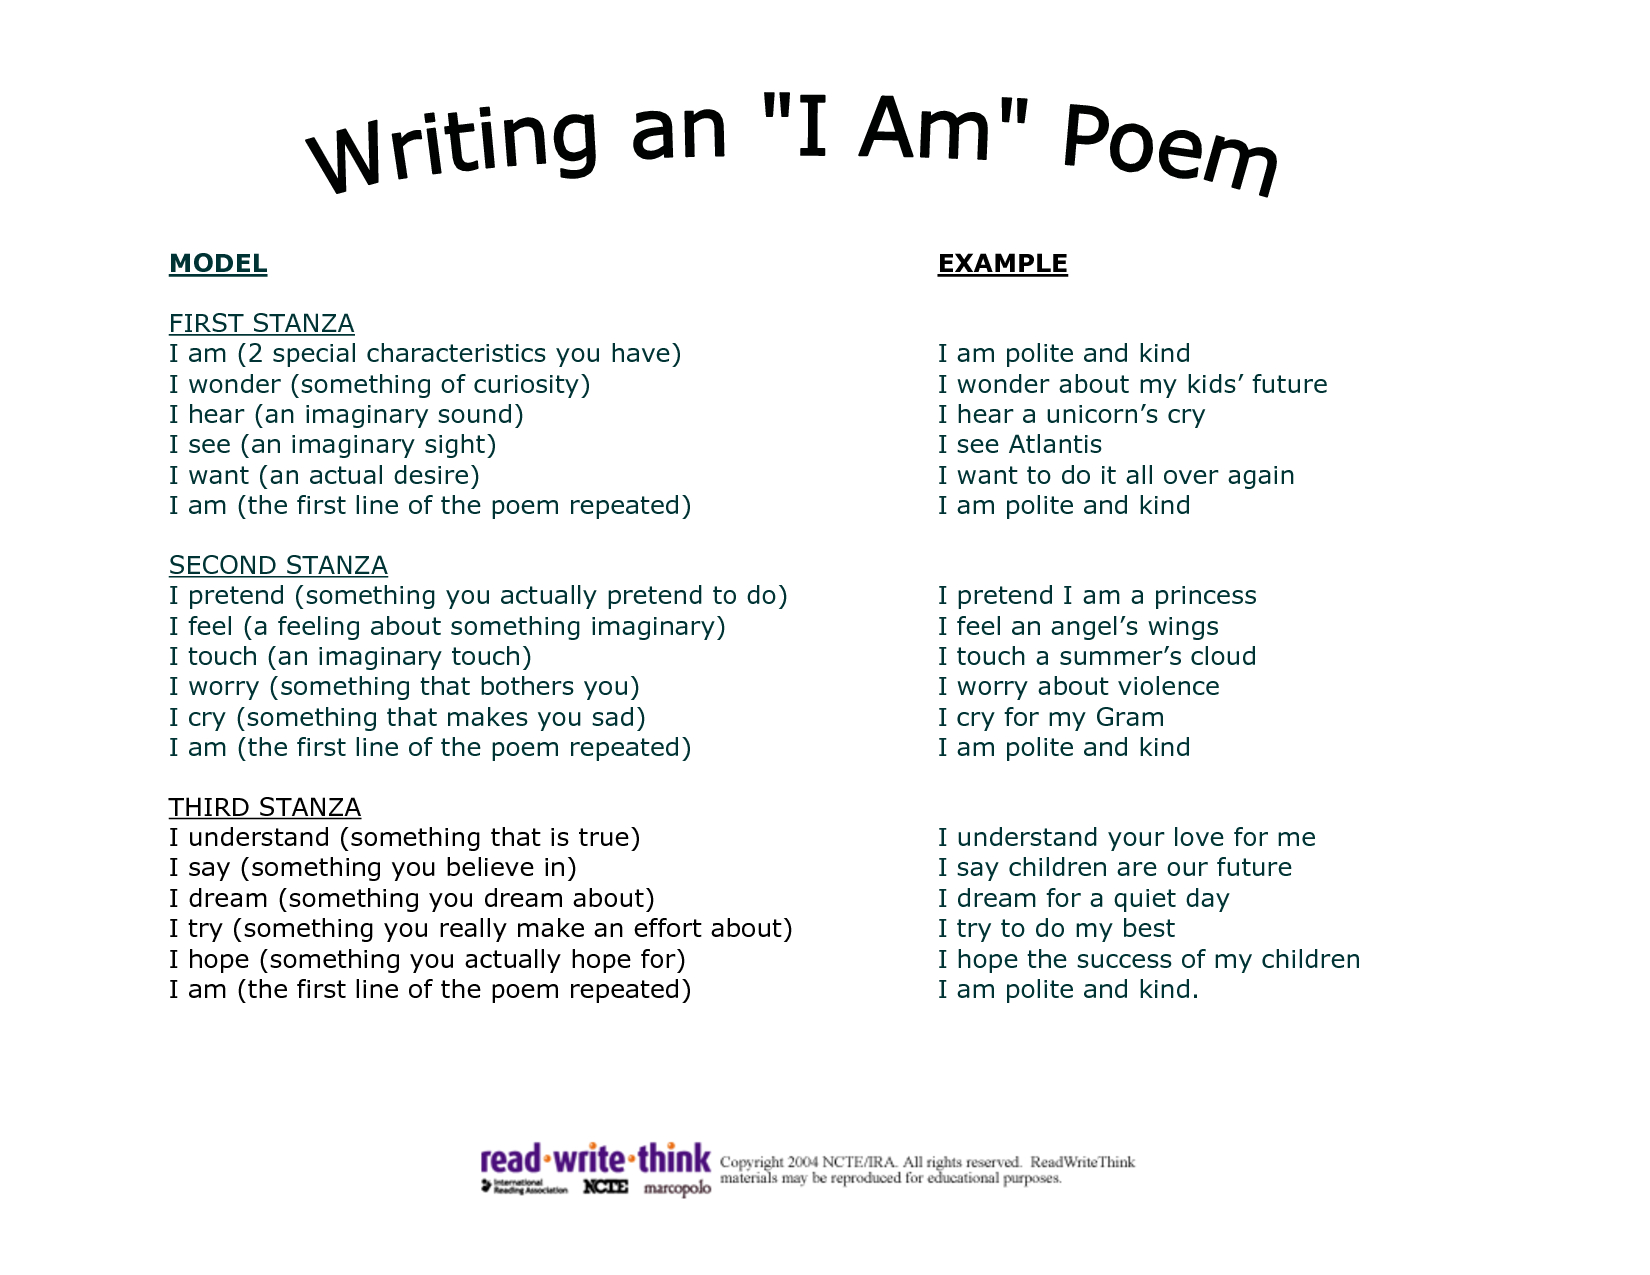 Who+I+Am+Poem+Examples | I Am Poem, Poem Template, I Am Poem